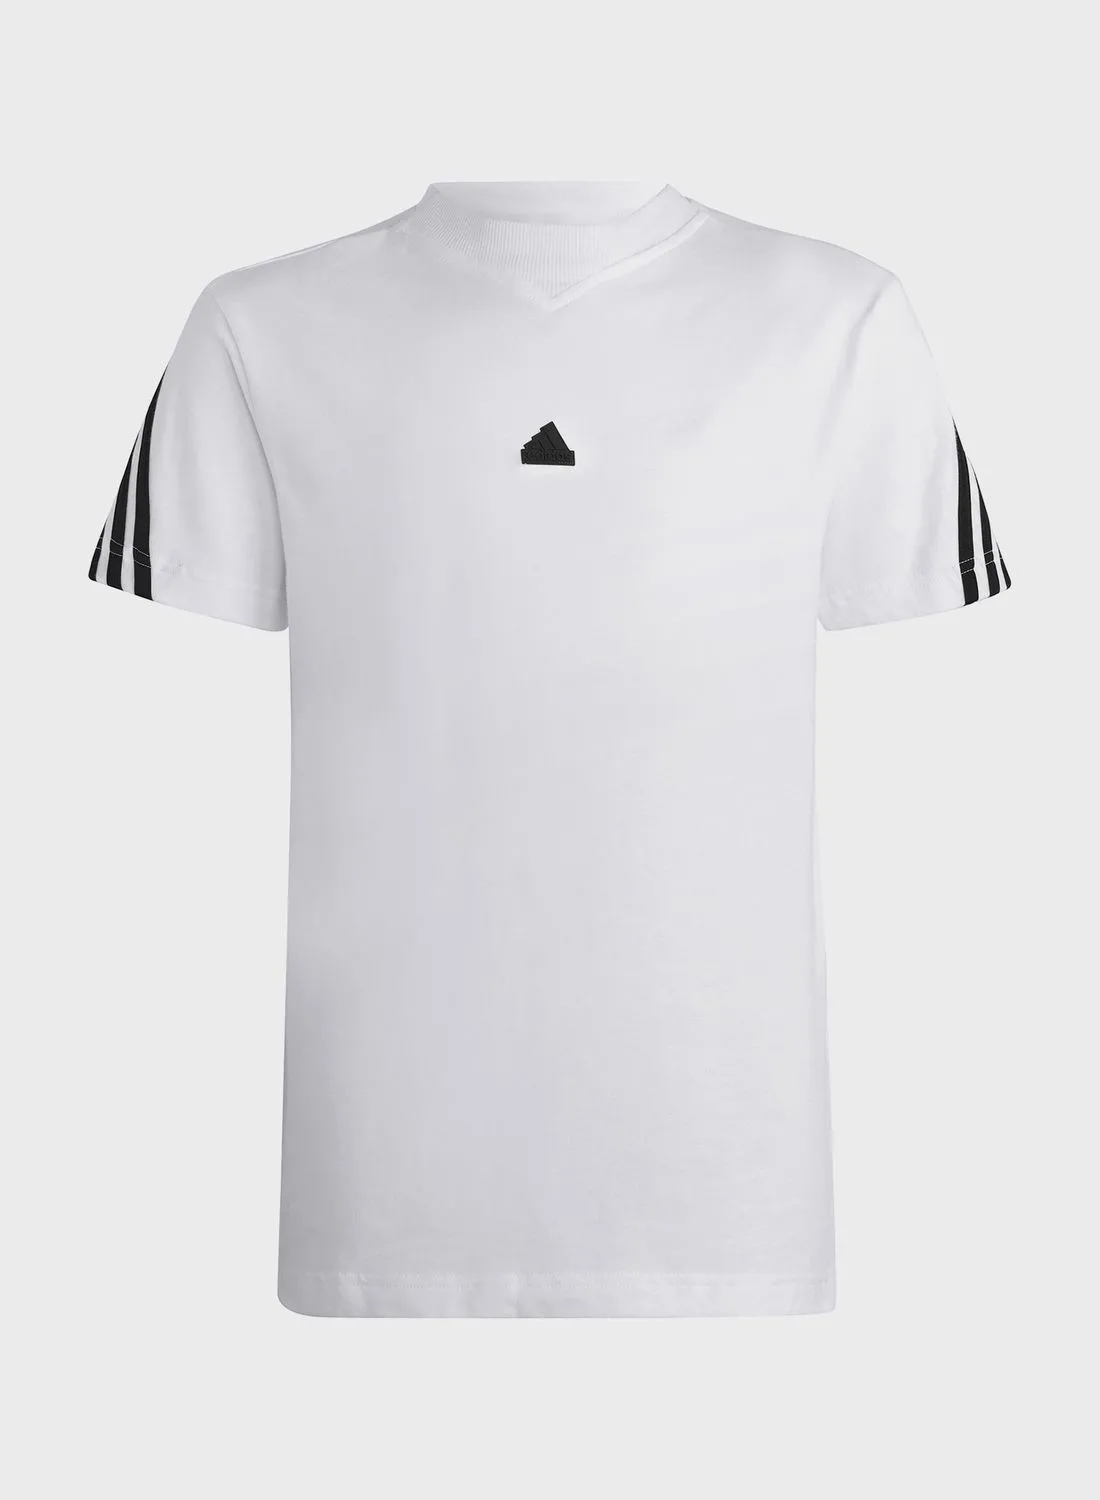 Adidas 3 Stripes Future Icons T-shirt